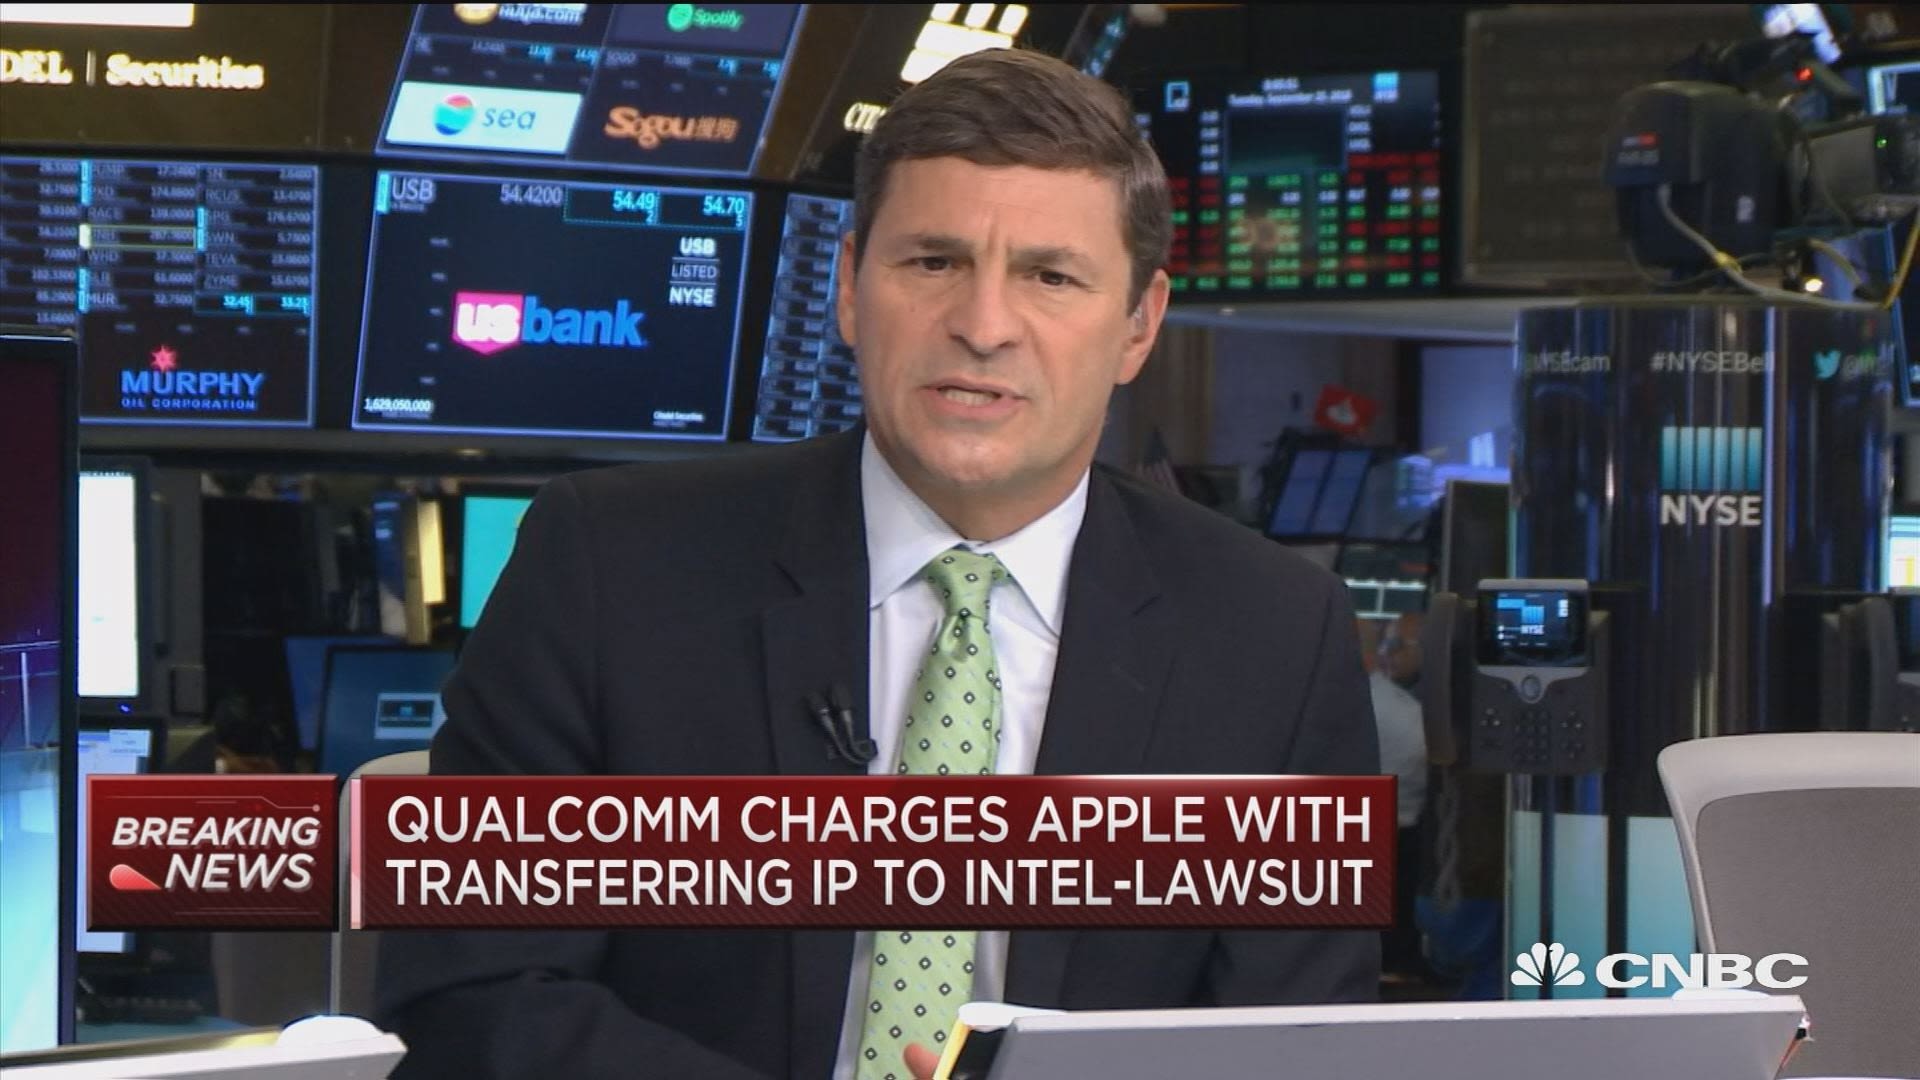 Qualcomm nói đã có
bằng chứng cho thấy Apple ăn trộm mã nguồn và gửi cho Intel